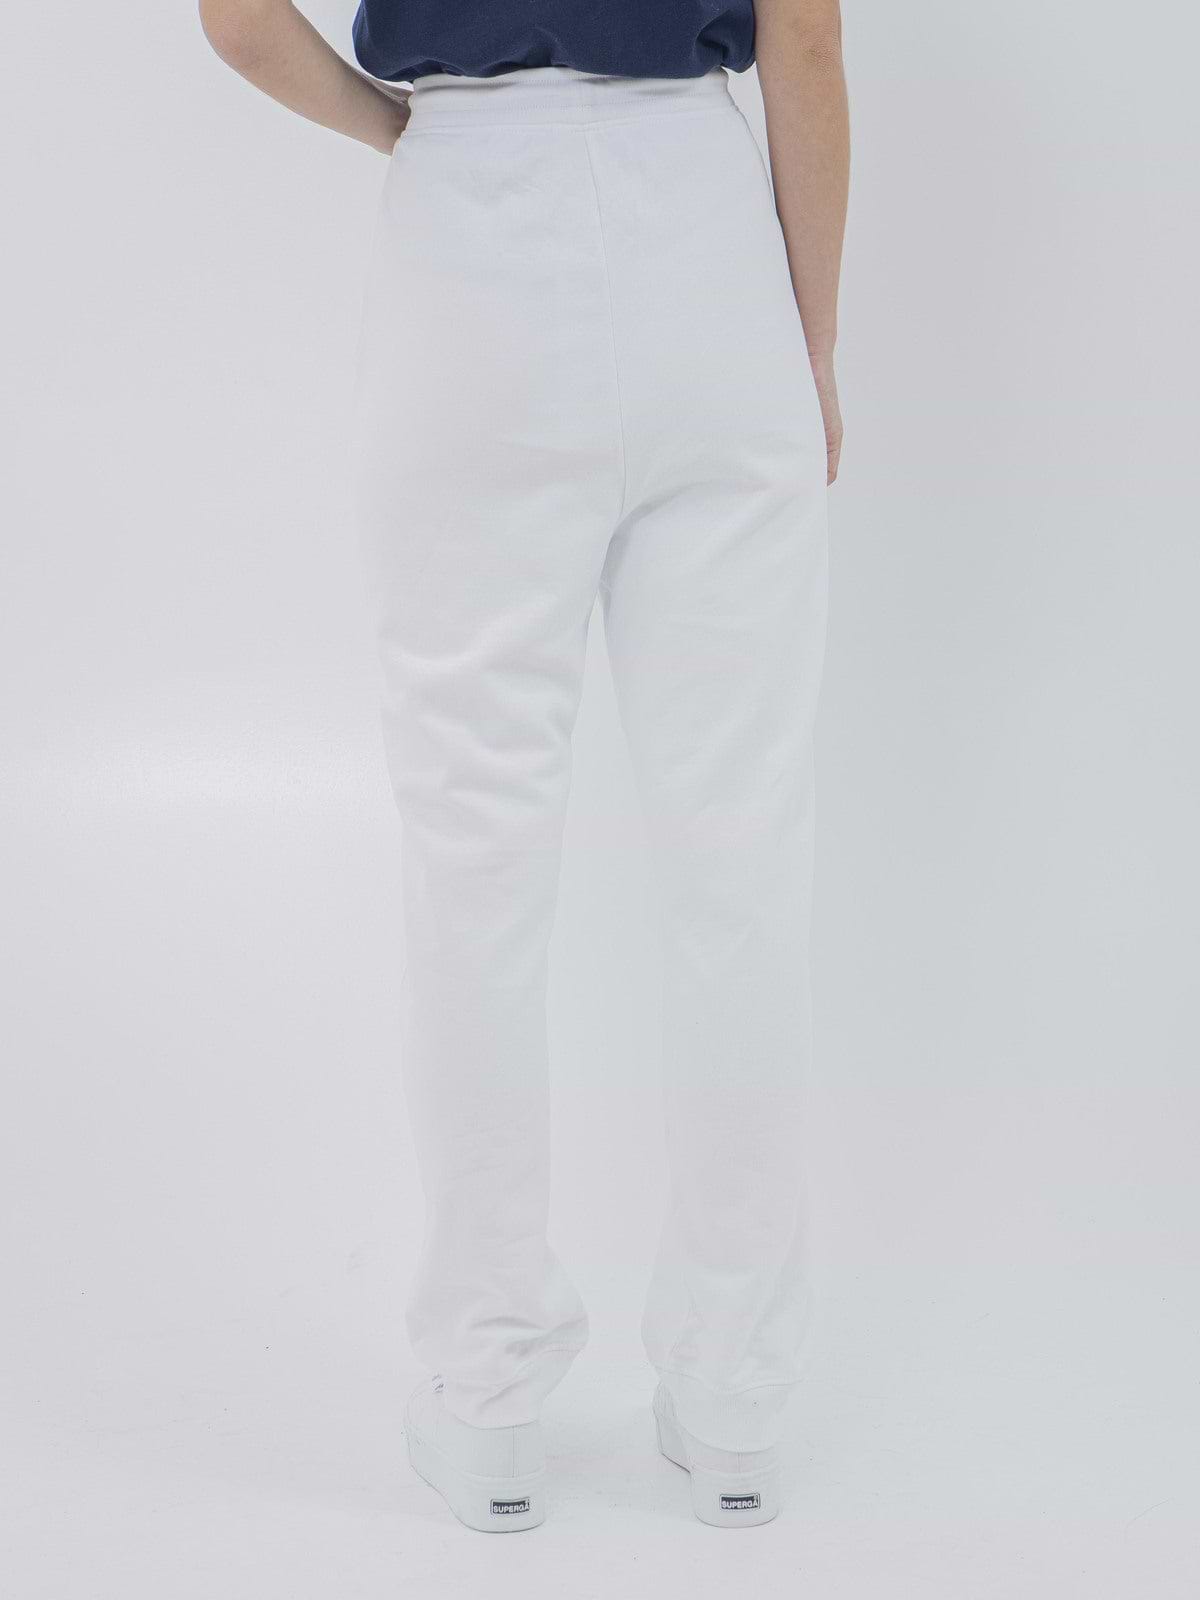 מכנסי טרנינג עם לוגו רקום- Tommy Hilfiger|טומי הילפיגר